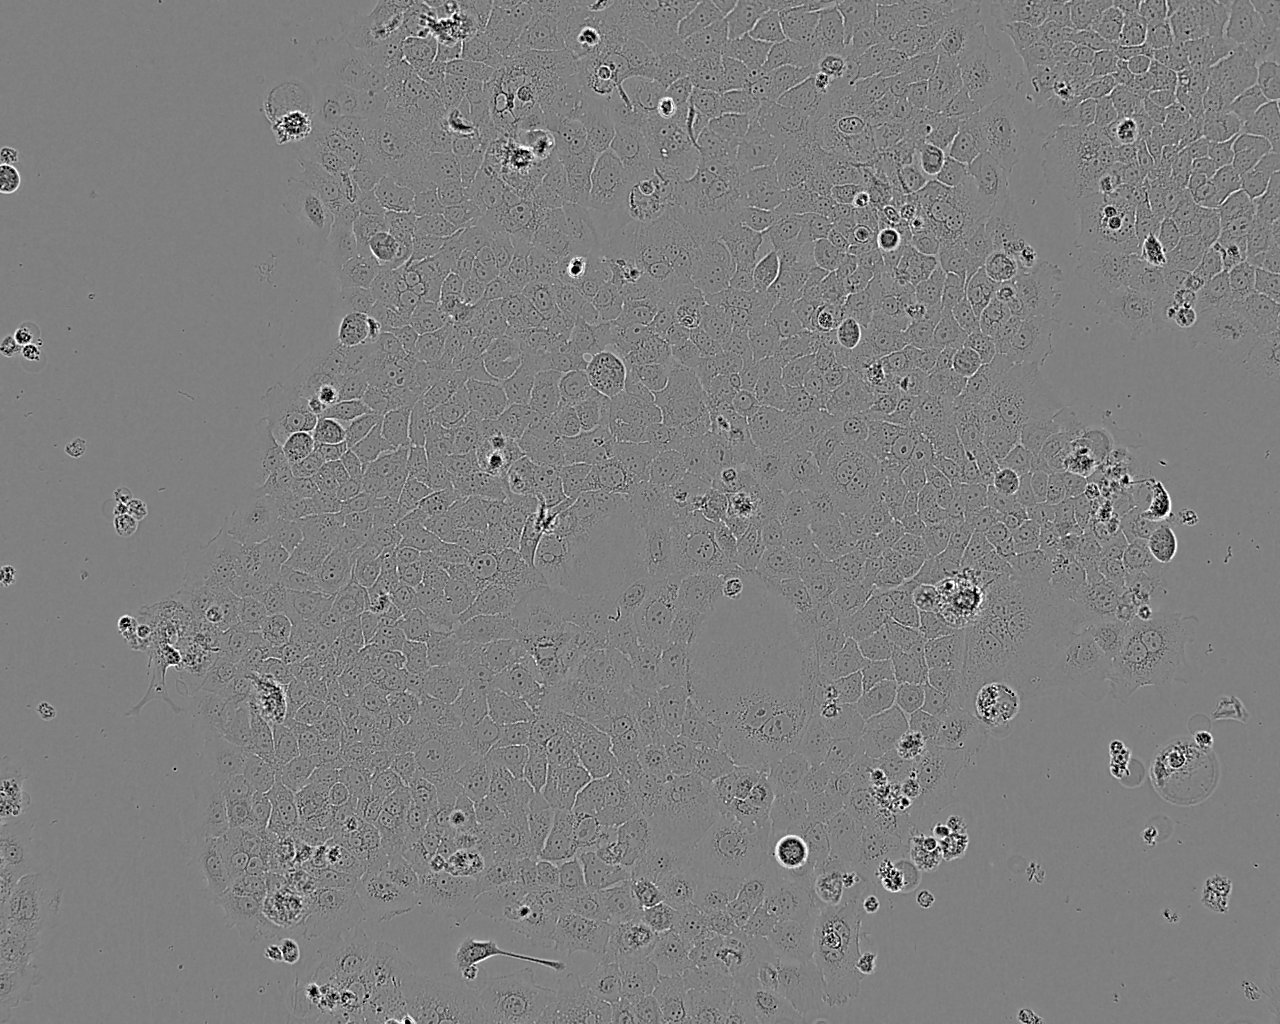 RGC-5 Cell:小鼠视网膜神经节细胞系,RGC-5 Cell